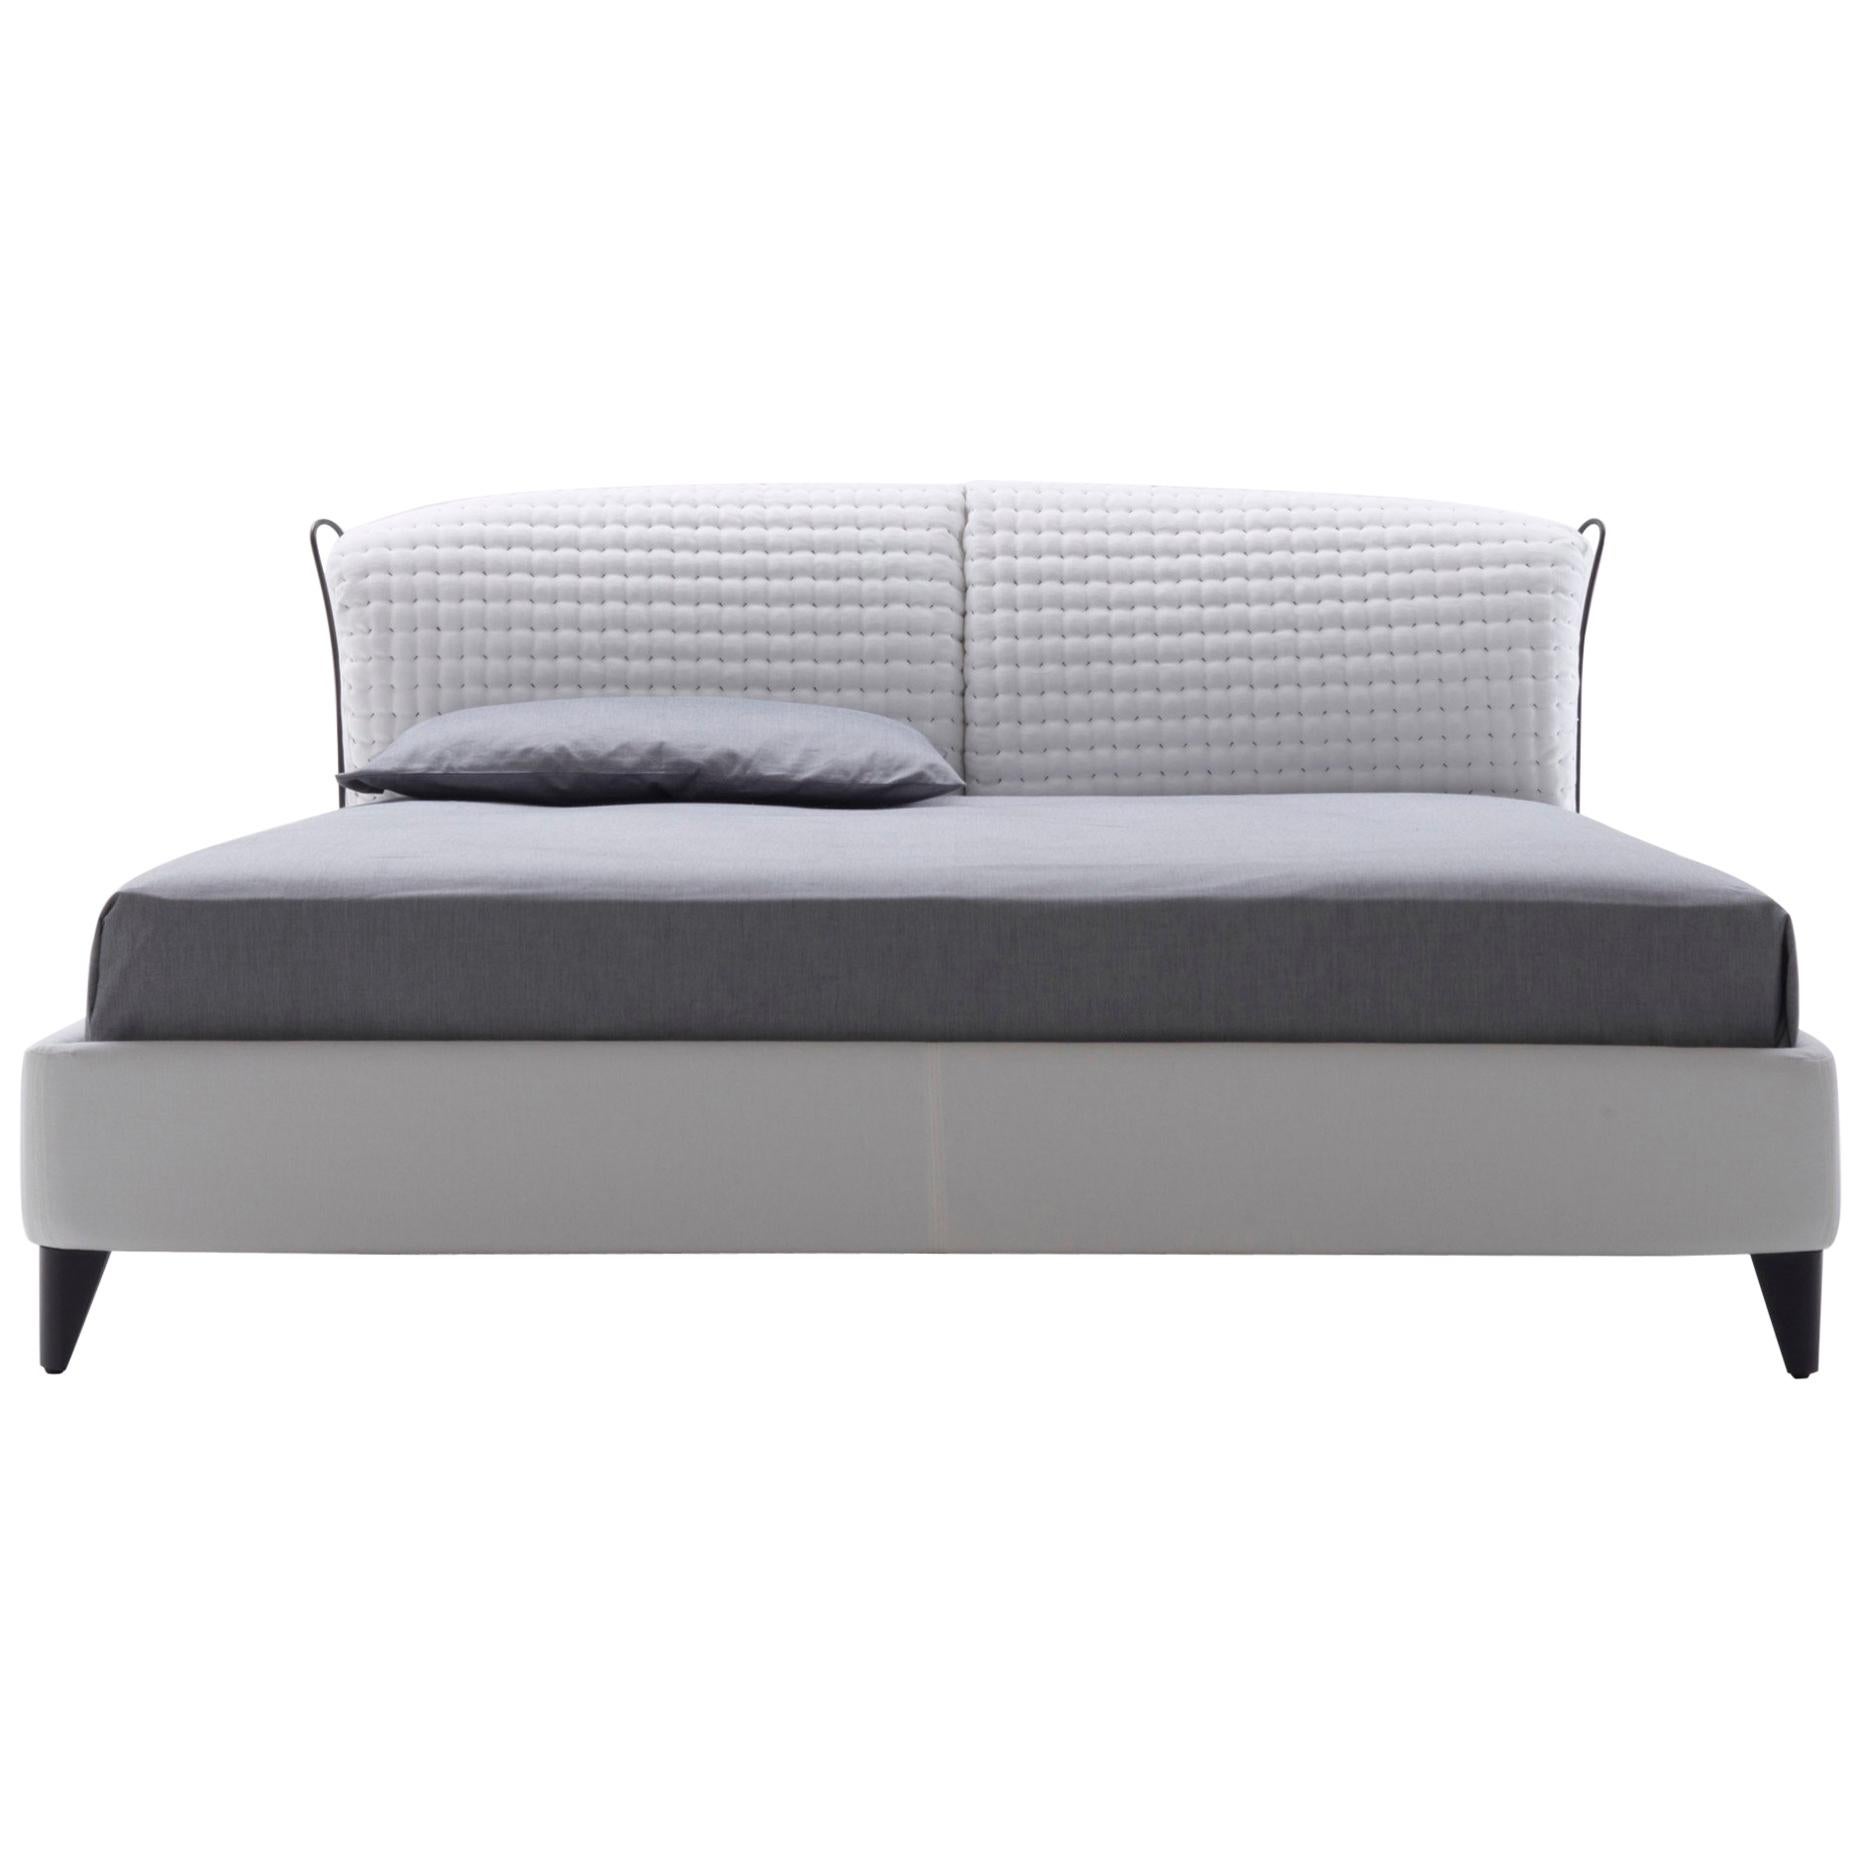 Nube Italia Flatter Sofa in Gray Fabric by Antonio Nicoli For Sale